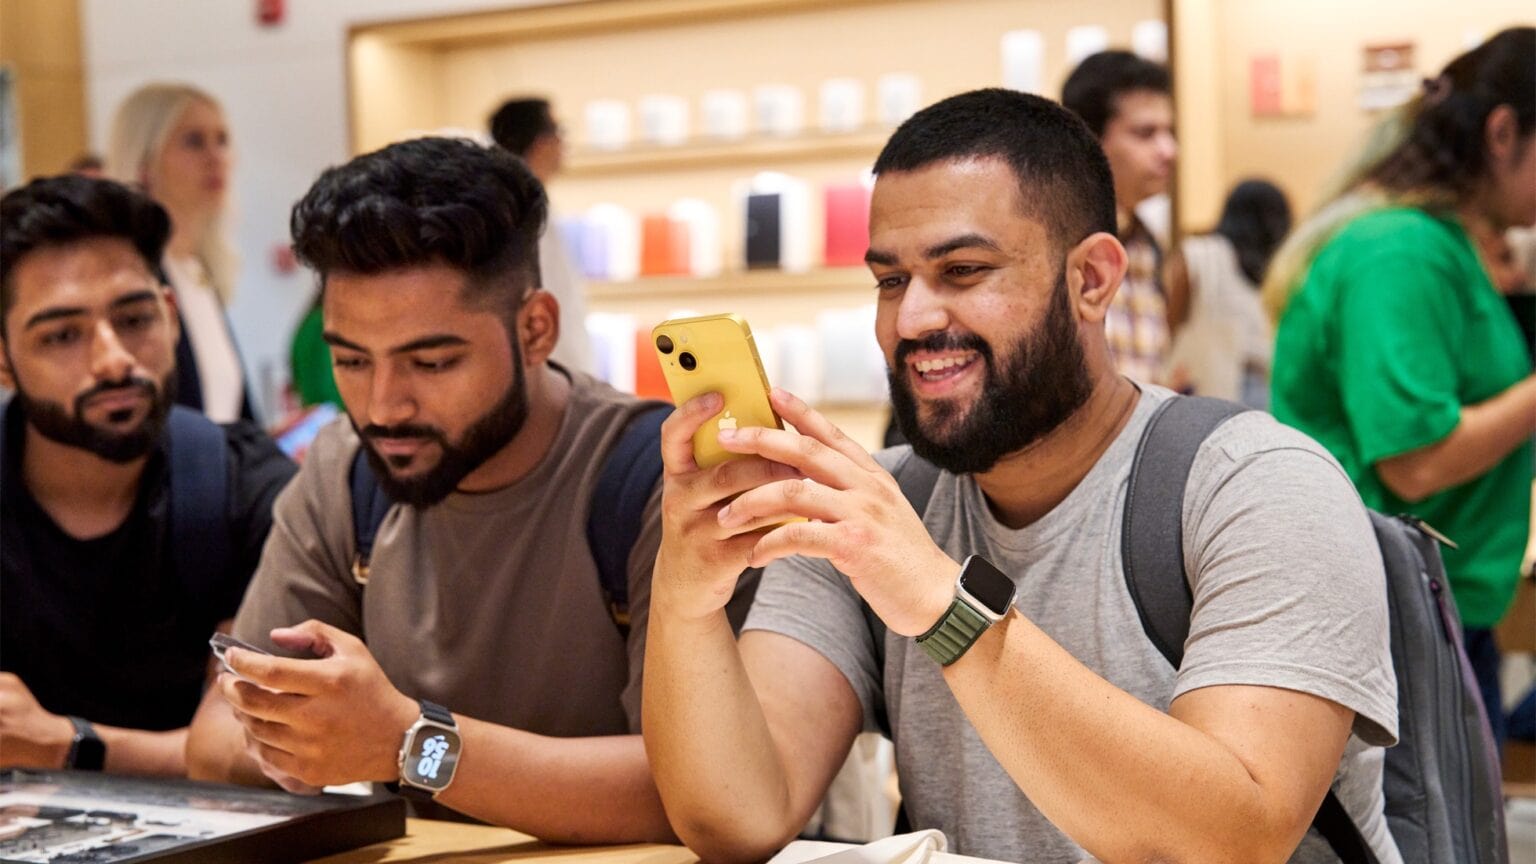 Apple Saket opened Thursday in the heart of India’s thriving capital of New Delhi.